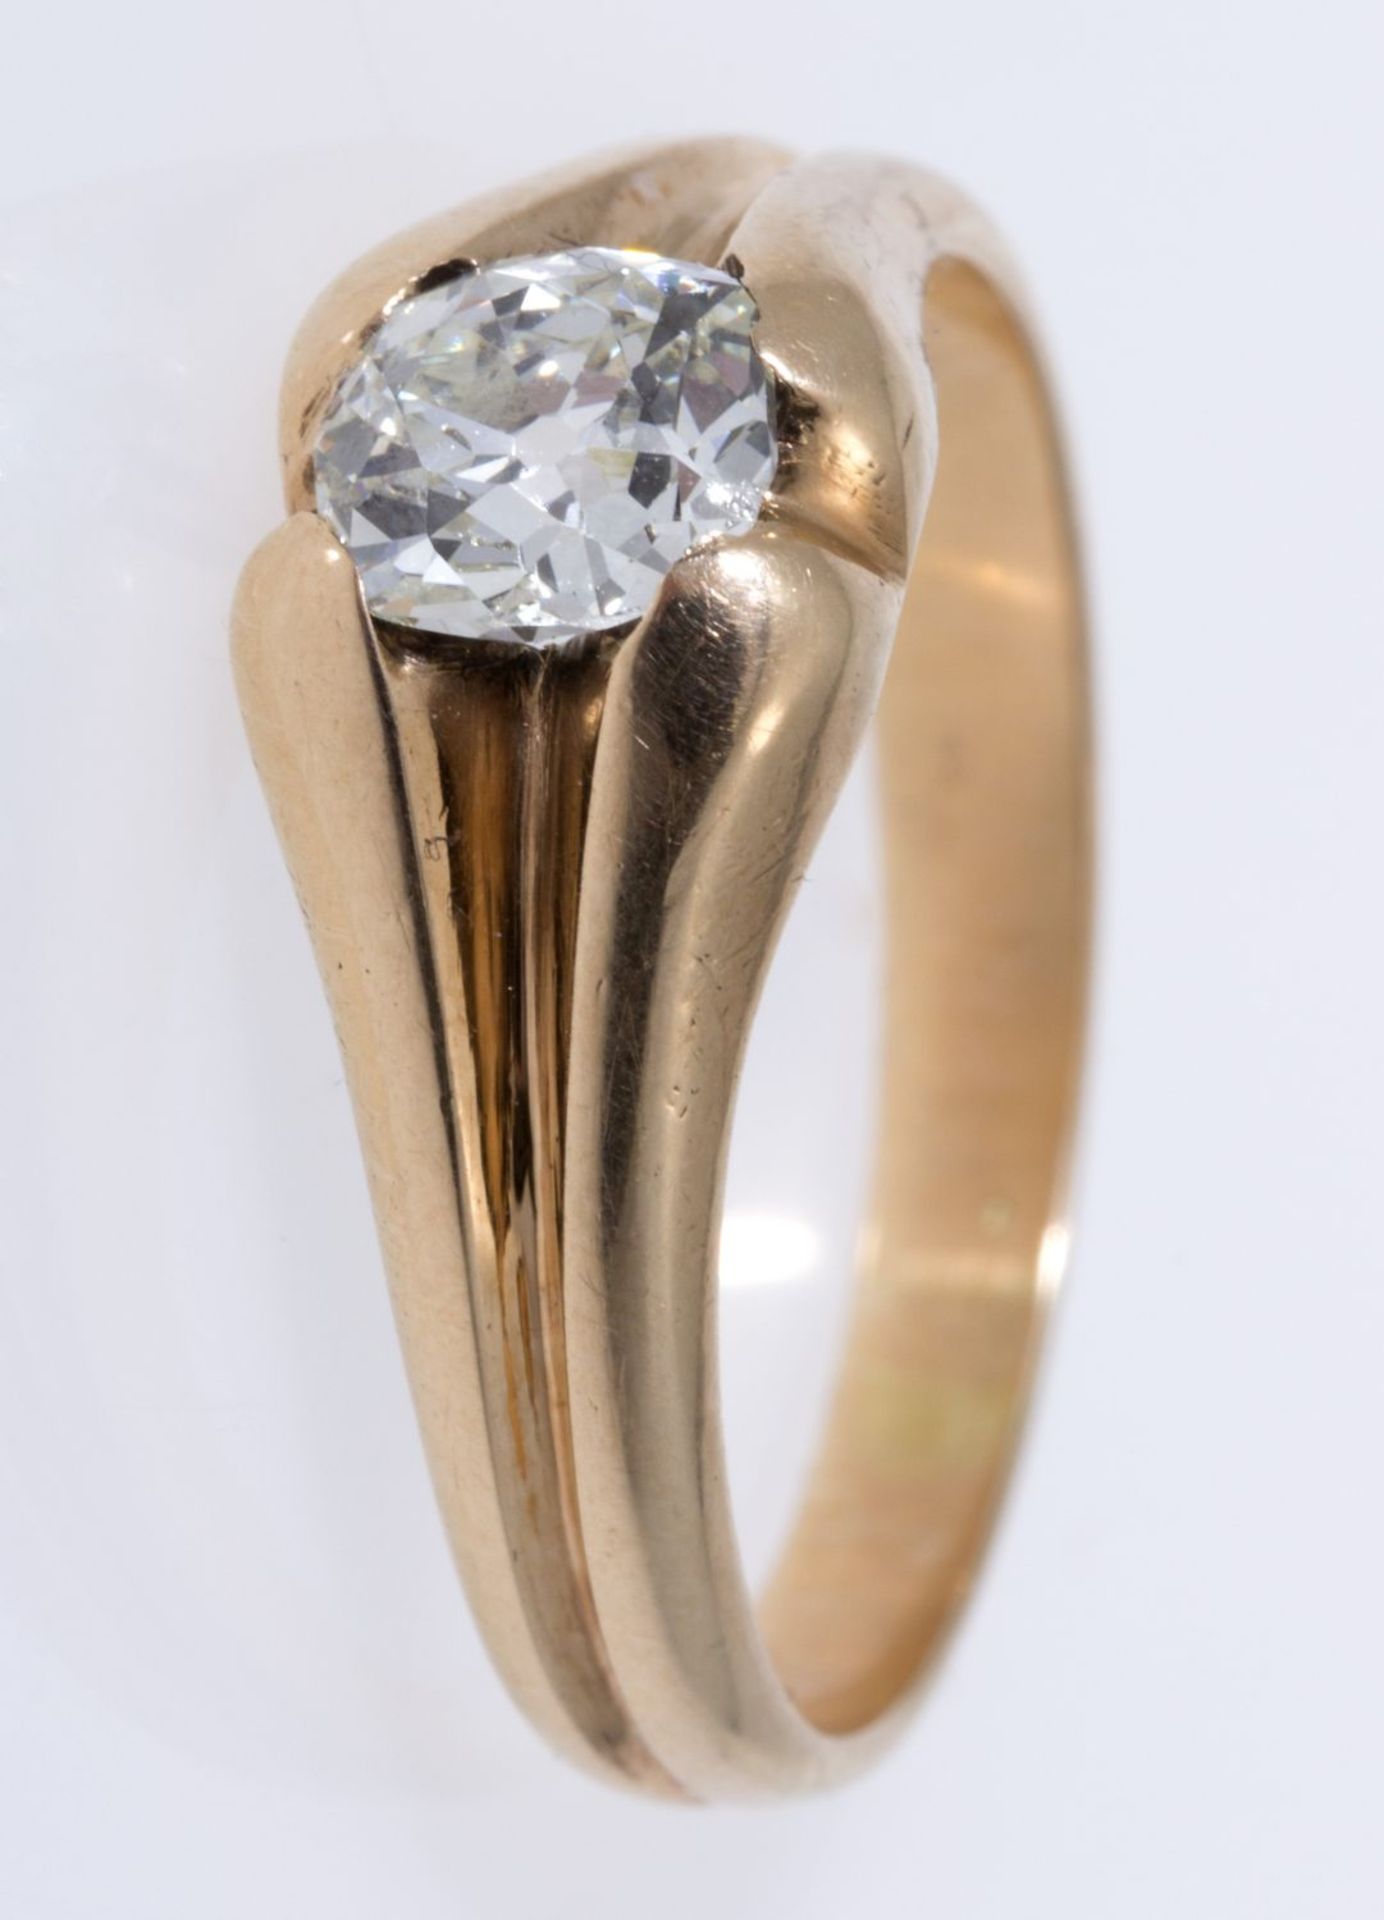 Solitär-Diamant-Ring Gelbgold 585 (geprüft). Ausgefasst mit Altschliff-Dia. ca. 0,60-0,70 c - Bild 3 aus 3